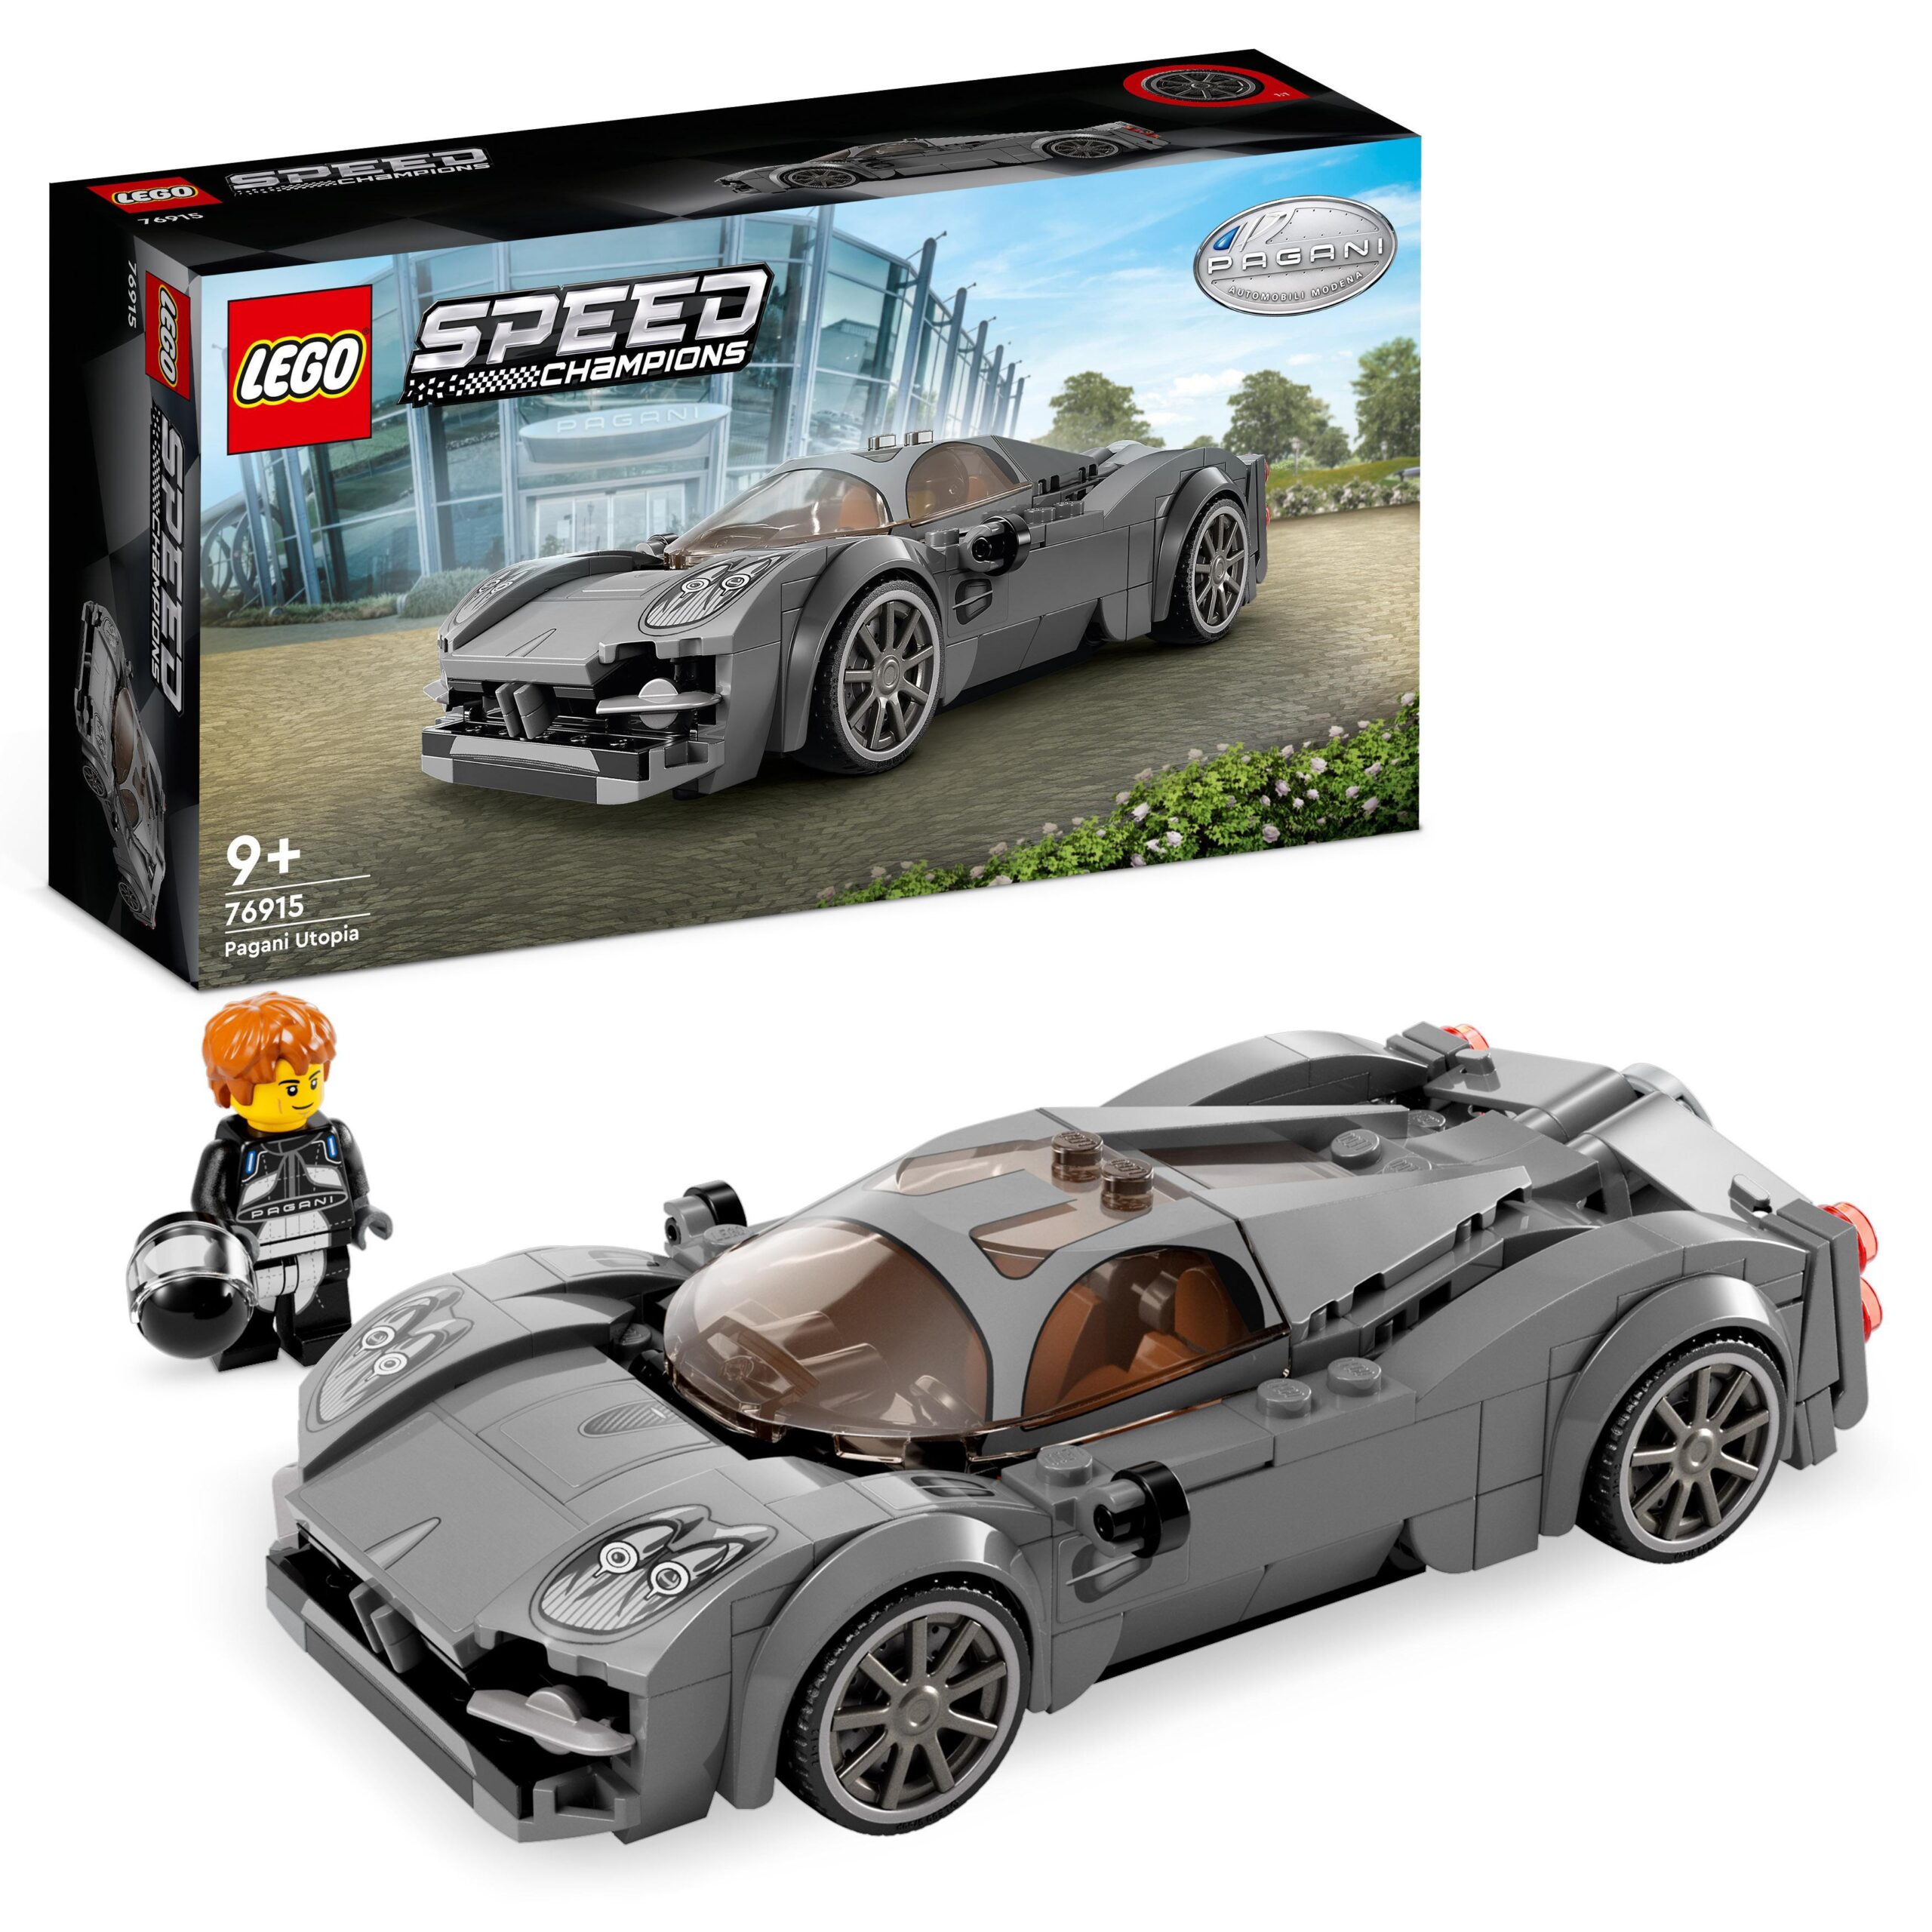 Lego speed champions 76915 pagani utopia, modellino di auto di